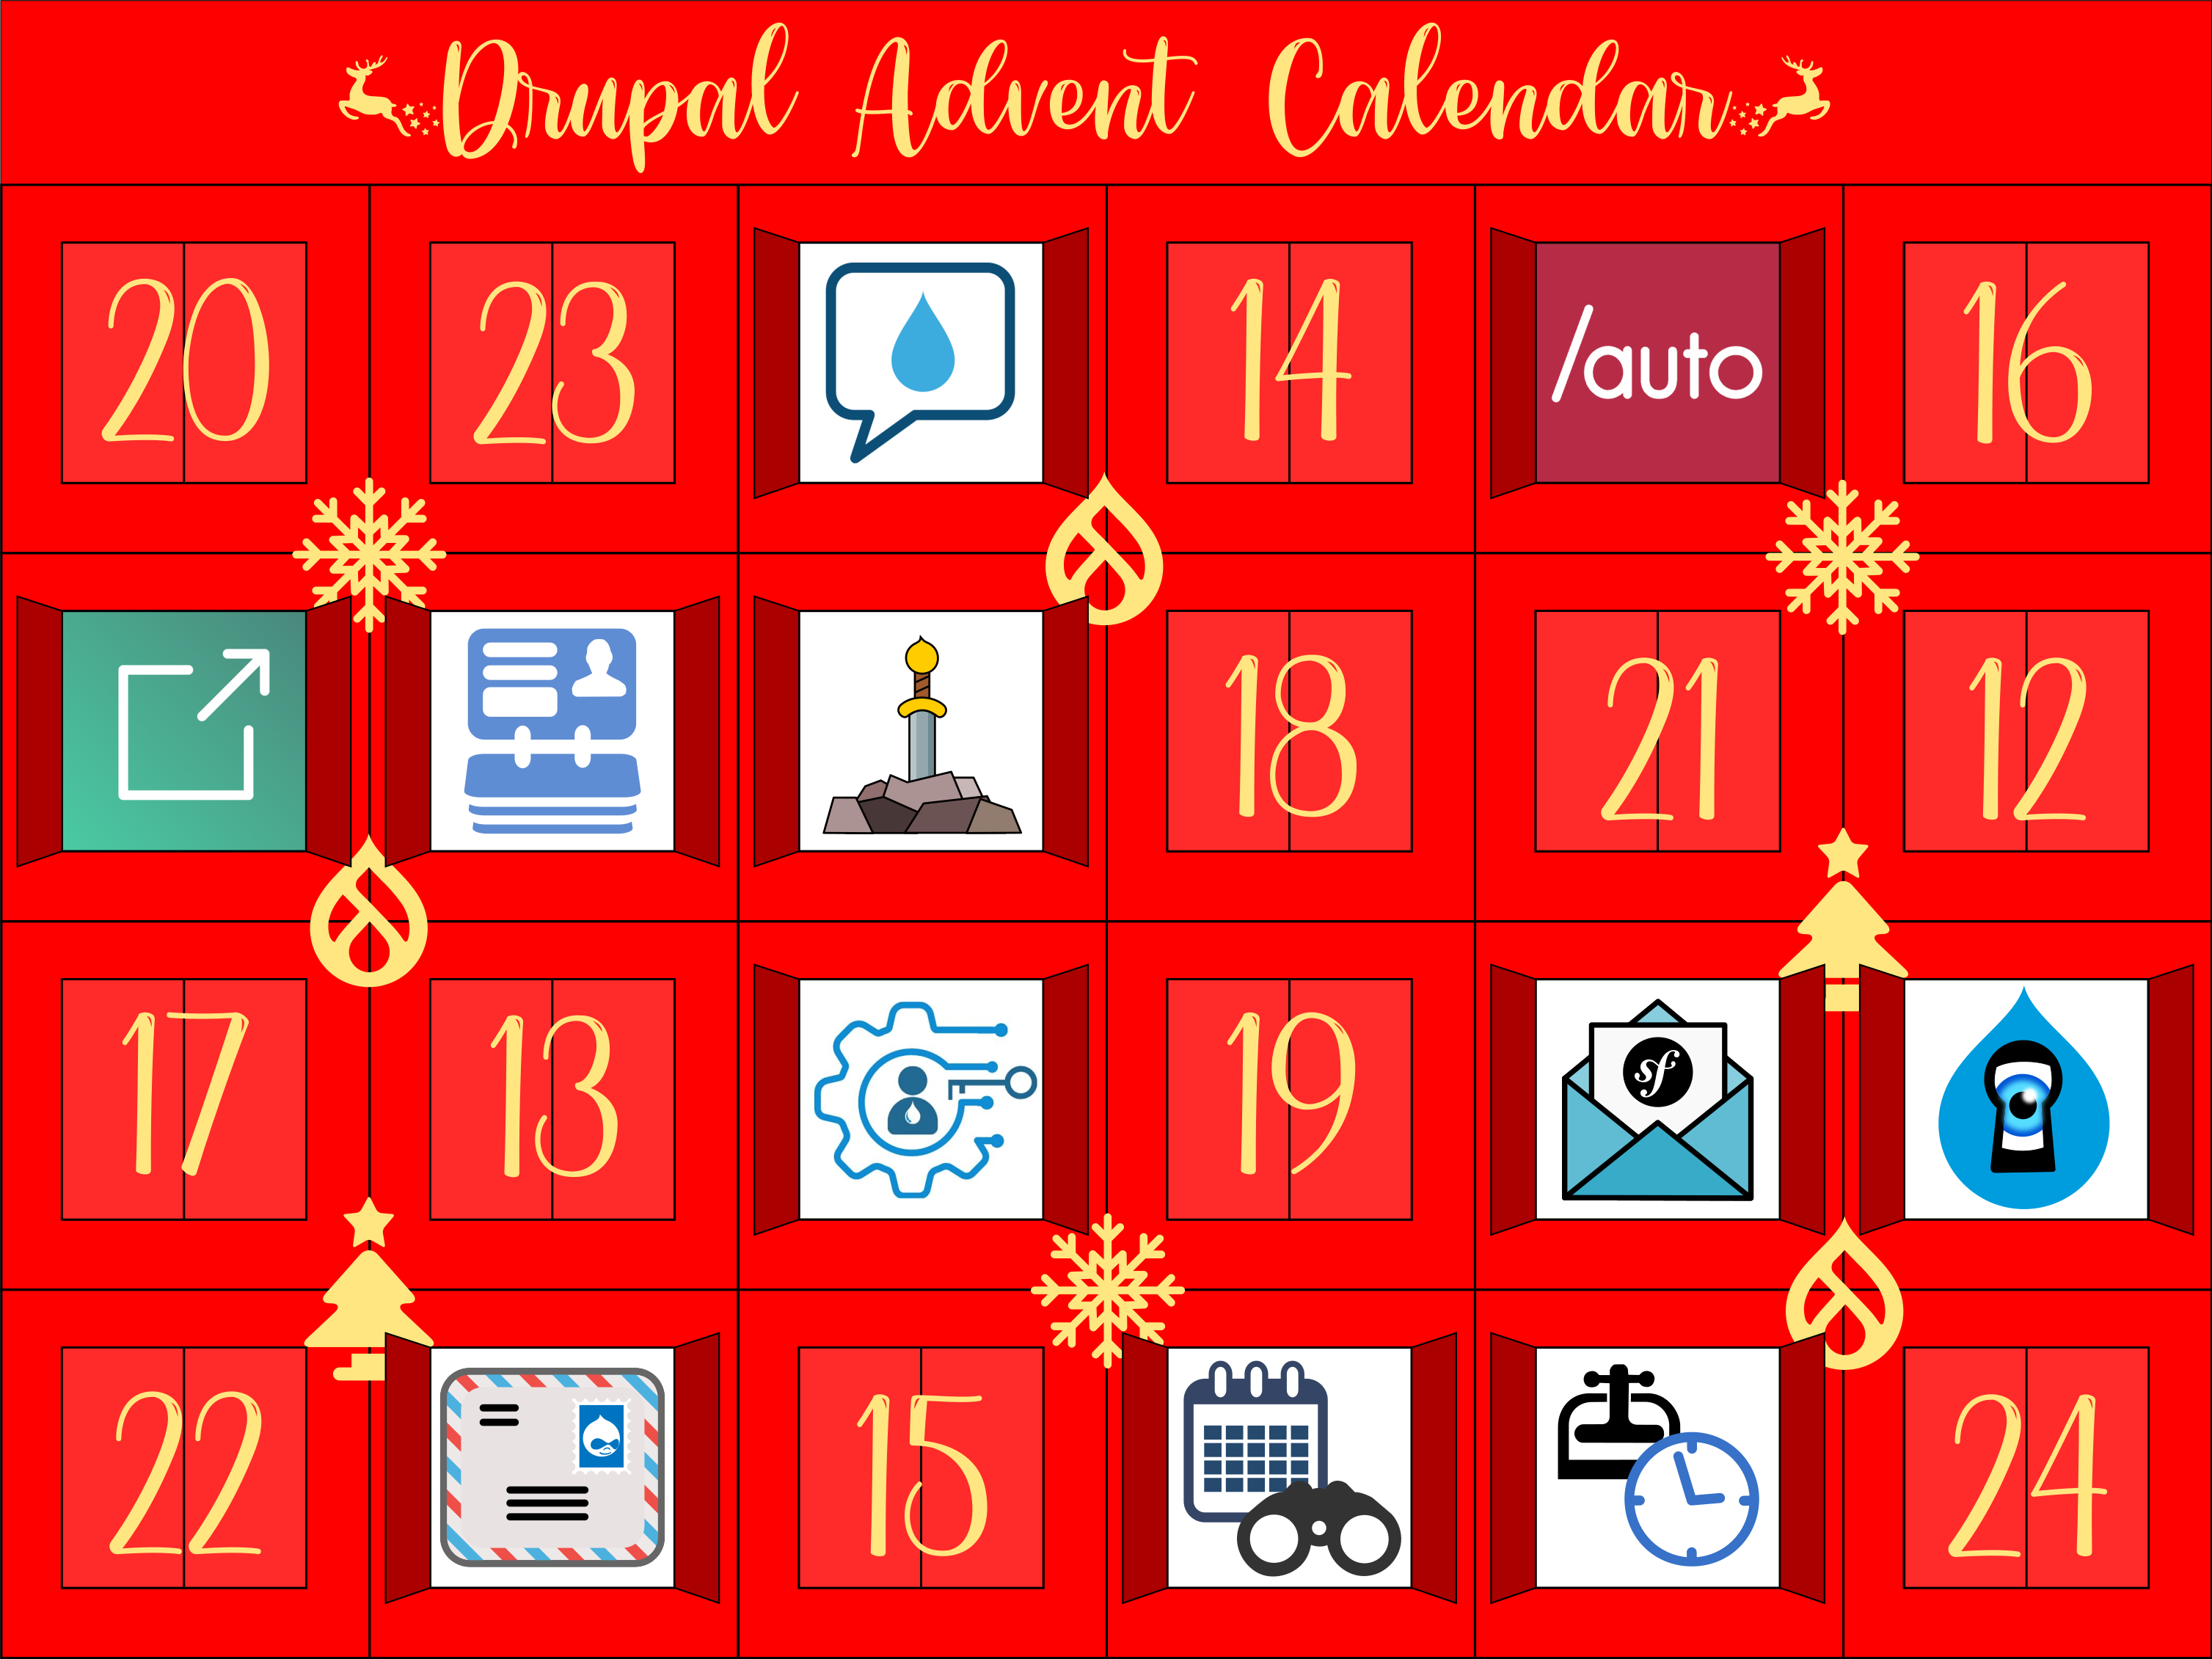 Advent Calendar with door 11 open, revealing Symfony Mailer